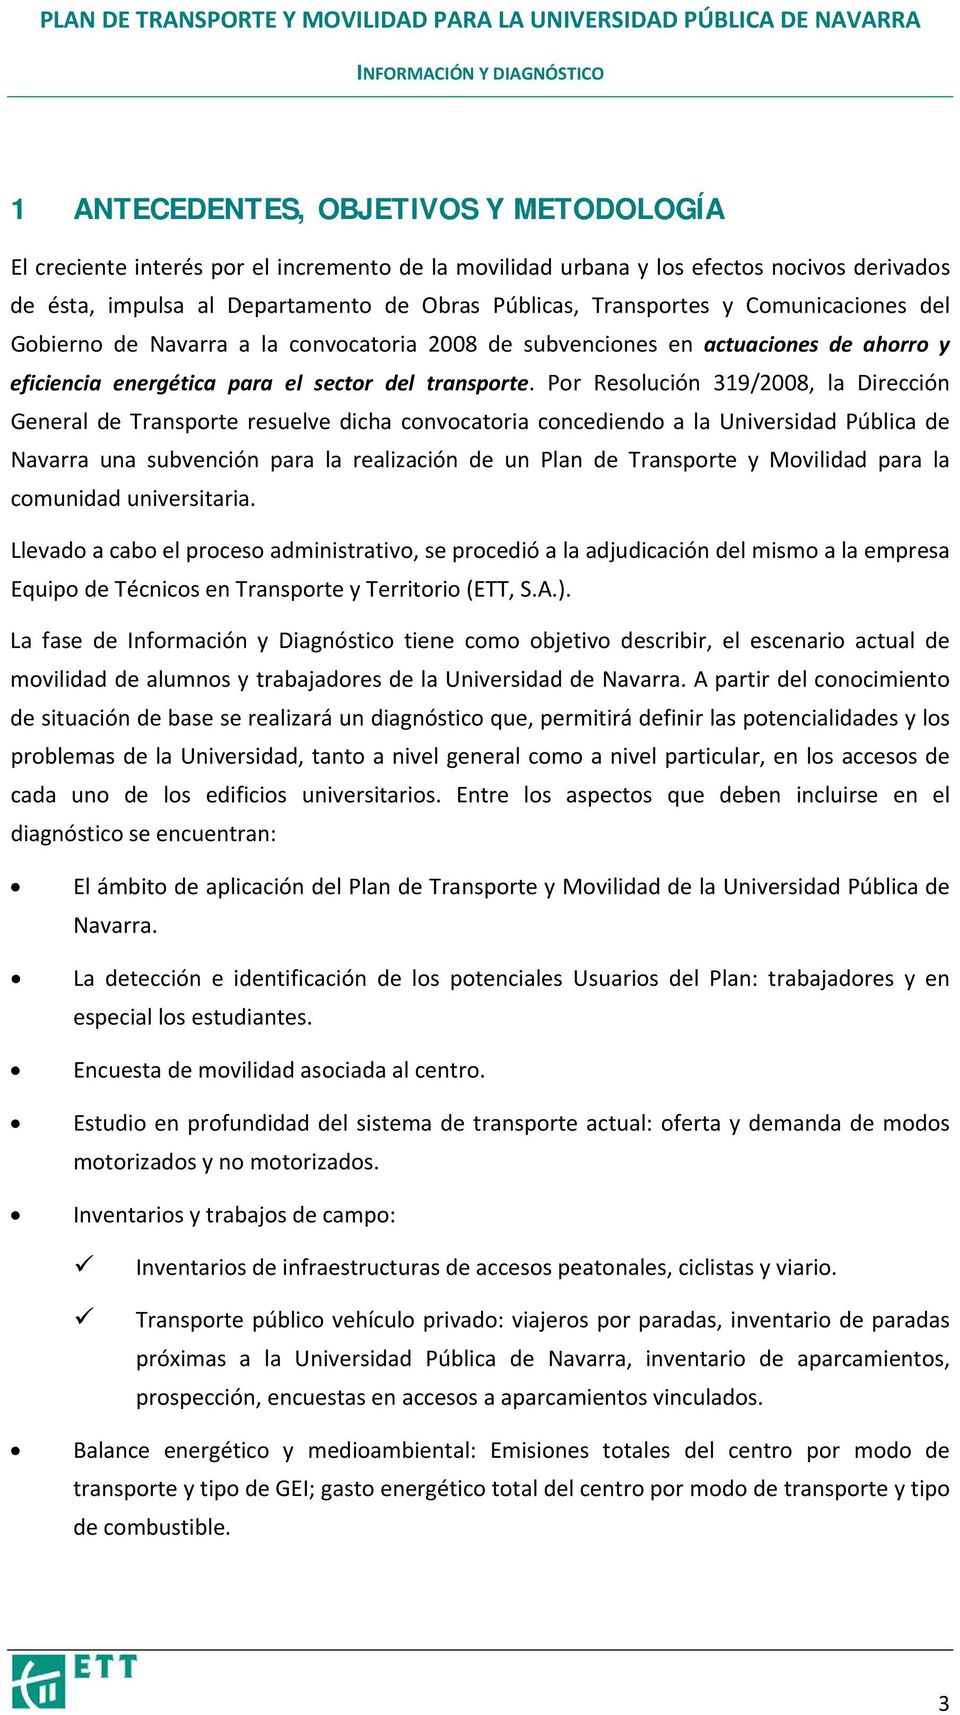 Por Resolución 319/2008, la Dirección General de Transporte resuelve dicha convocatoria concediendo a la Universidad Pública de Navarra una subvención para la realización de un Plan de Transporte y